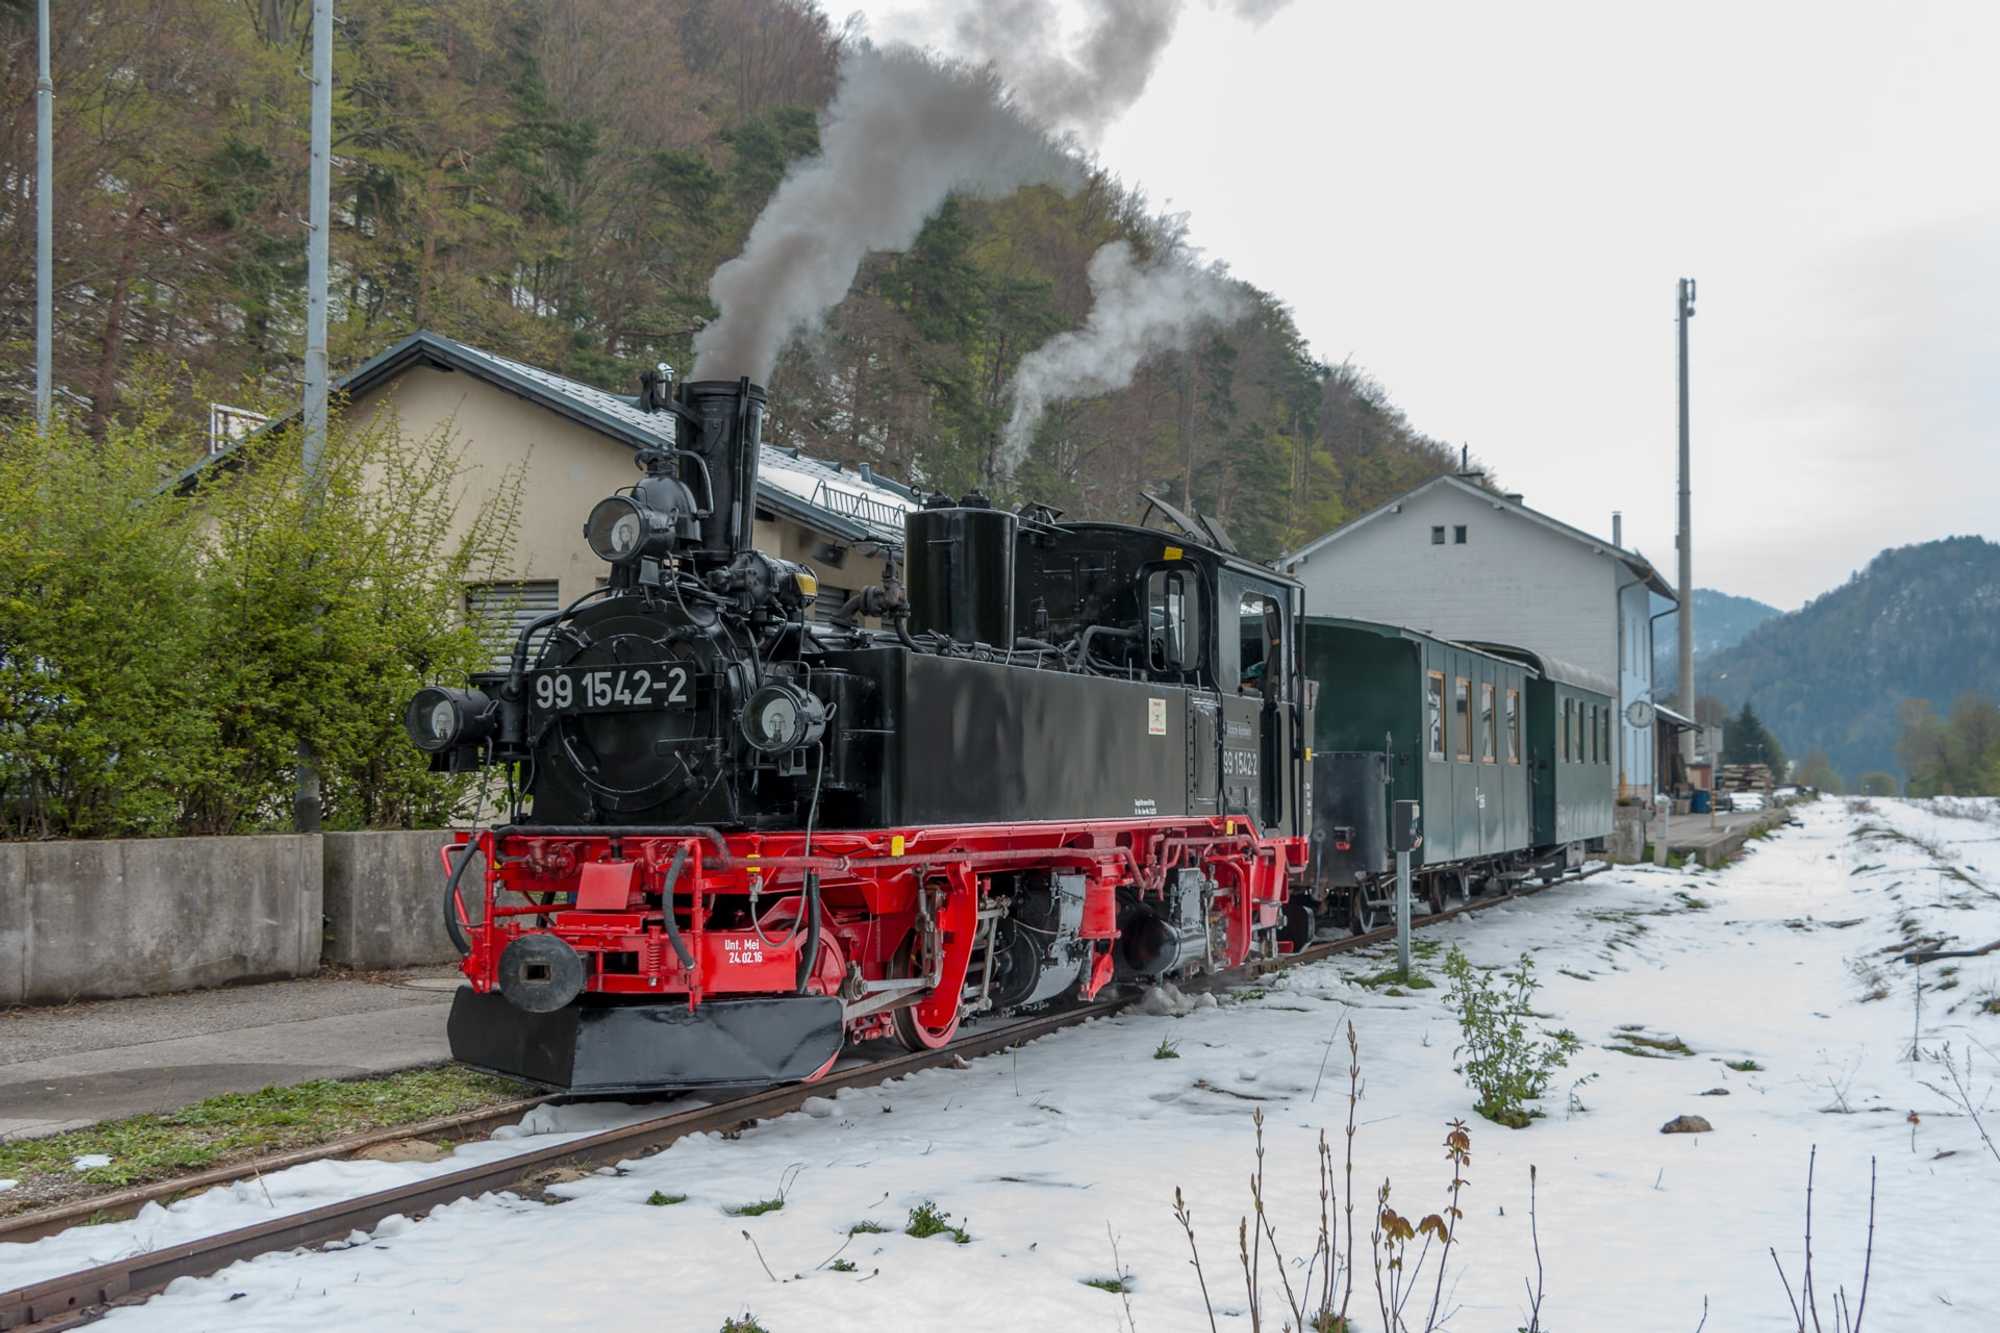 Die IV K 99 1542-2 der Preßnitztalbahn zu Gast für Probefahrten auf der Ybbstalbahn-Bergstrecke in Niederösterreich, hier aufgenommen am Bahnhof Kiemberg-Gaming.